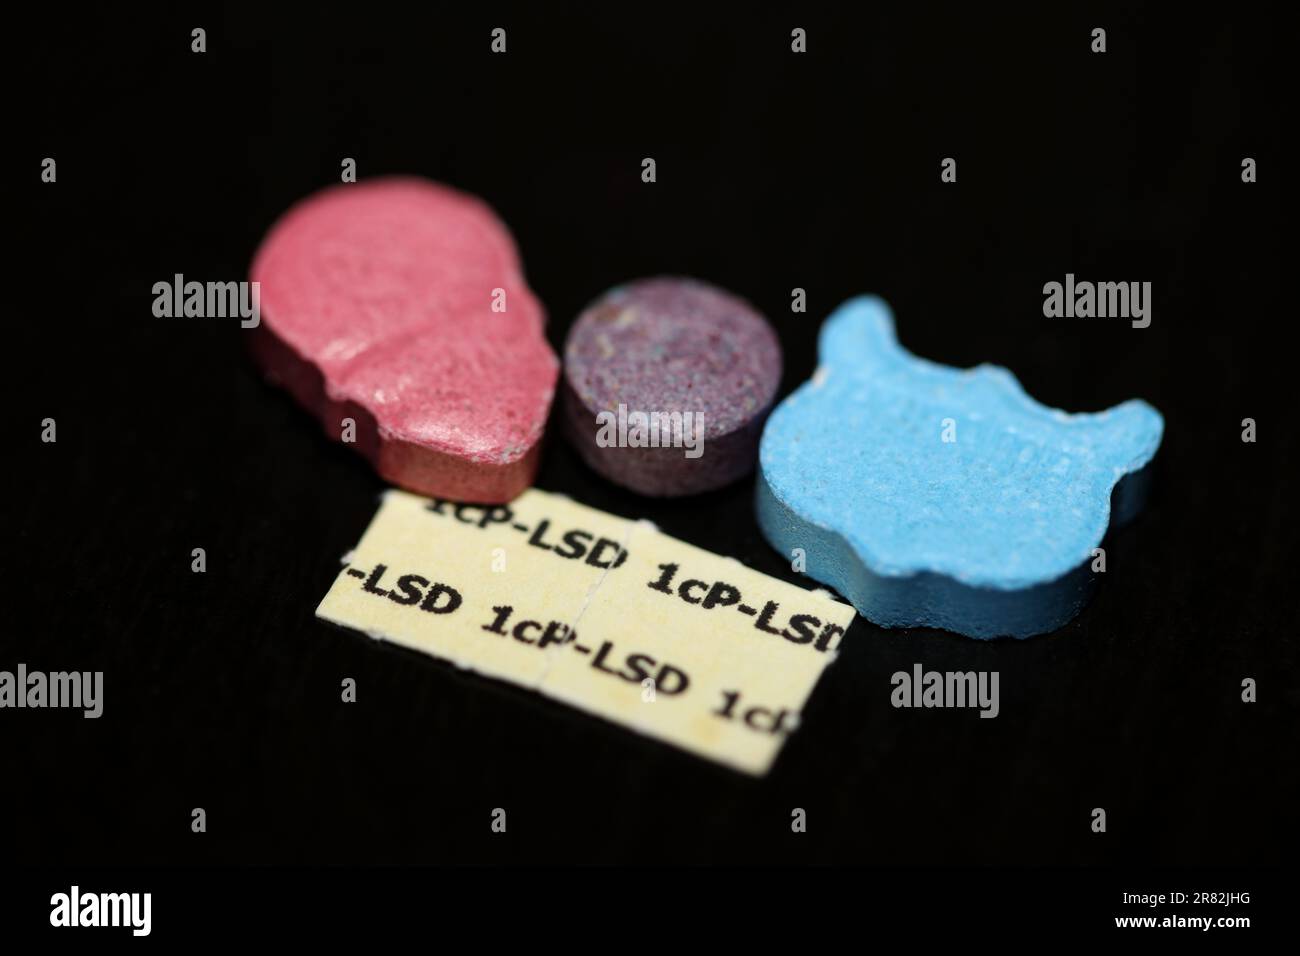 Eine Mischung aus Medikamenten- und Medikamentenpillen, die mdma- und lsd-Stick-Papiere enthalten, zeigt den Hintergrund von Partytieren mit extragroßen Tanzabdrücken Stockfoto